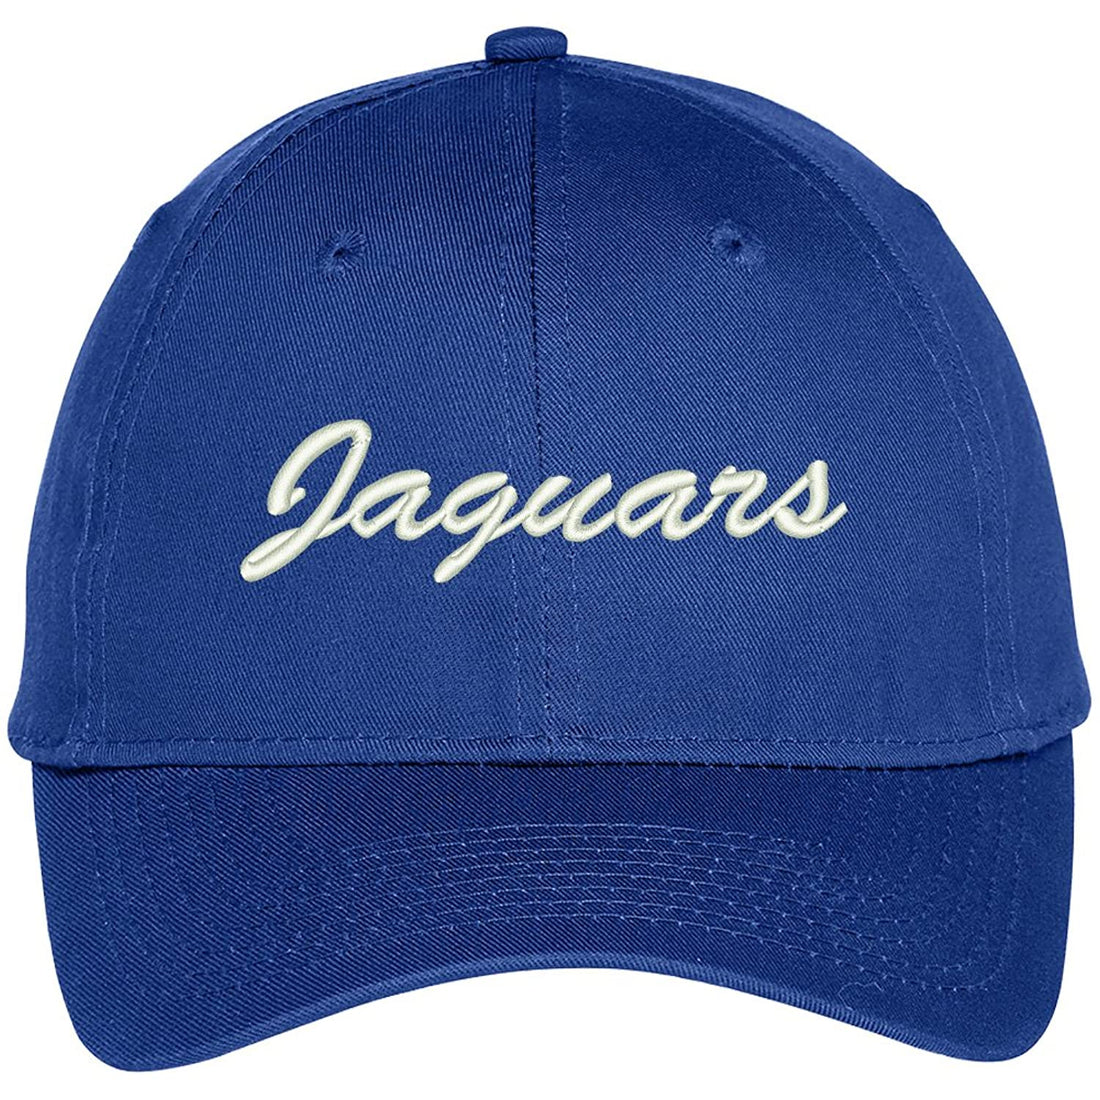 Trendy Apparel Shop Jaguars Embroidered Precurved Adjustable Cap - Royal